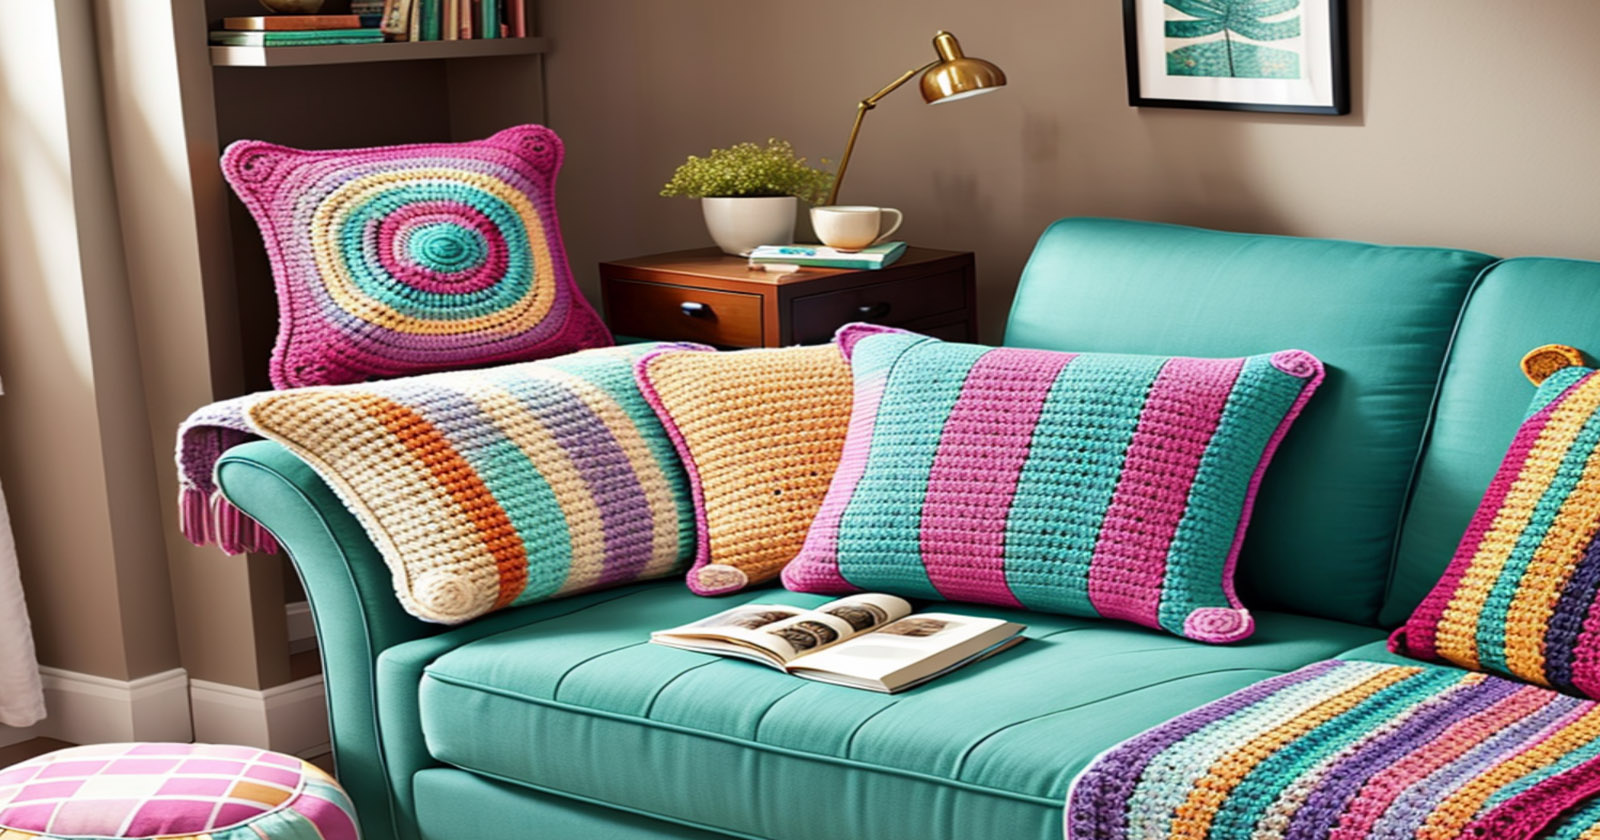 Almofada de crochê bicolor – Como fazer e usar na decoração da casa